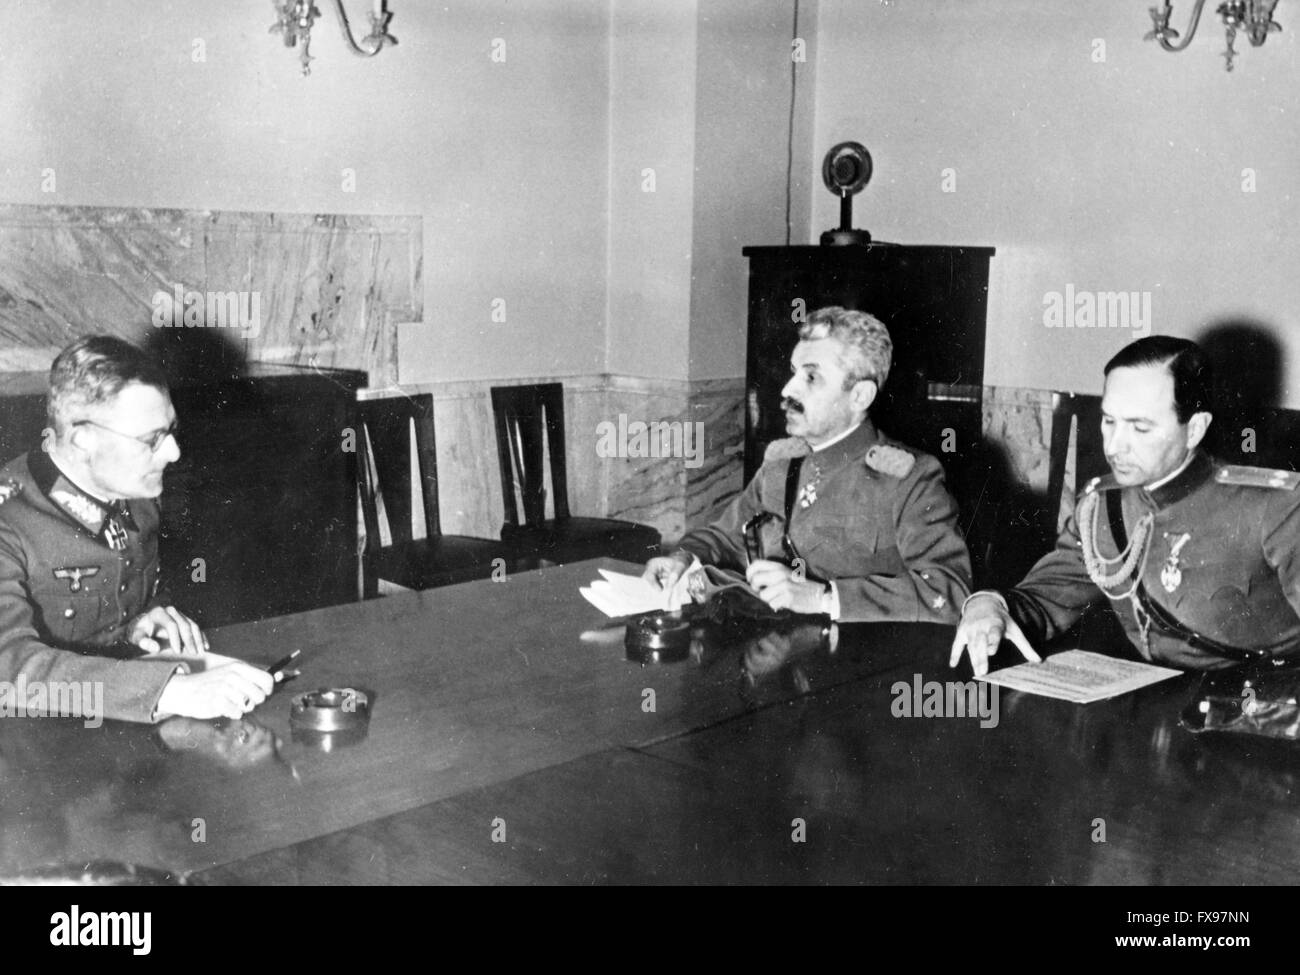 L'immagine della propaganda nazista raffigura il Generaloberst tedesco (colonnello generale) Maximilian von Weichs (L) con il generale serbo Mihailo Bodi (M) a Belgrado, in Serbia, il 16 aprile 1941, la notte prima della resa della Jugoslavia. Fotoarchiv für Zeitgeschichtee - SENZA FILI - Foto Stock